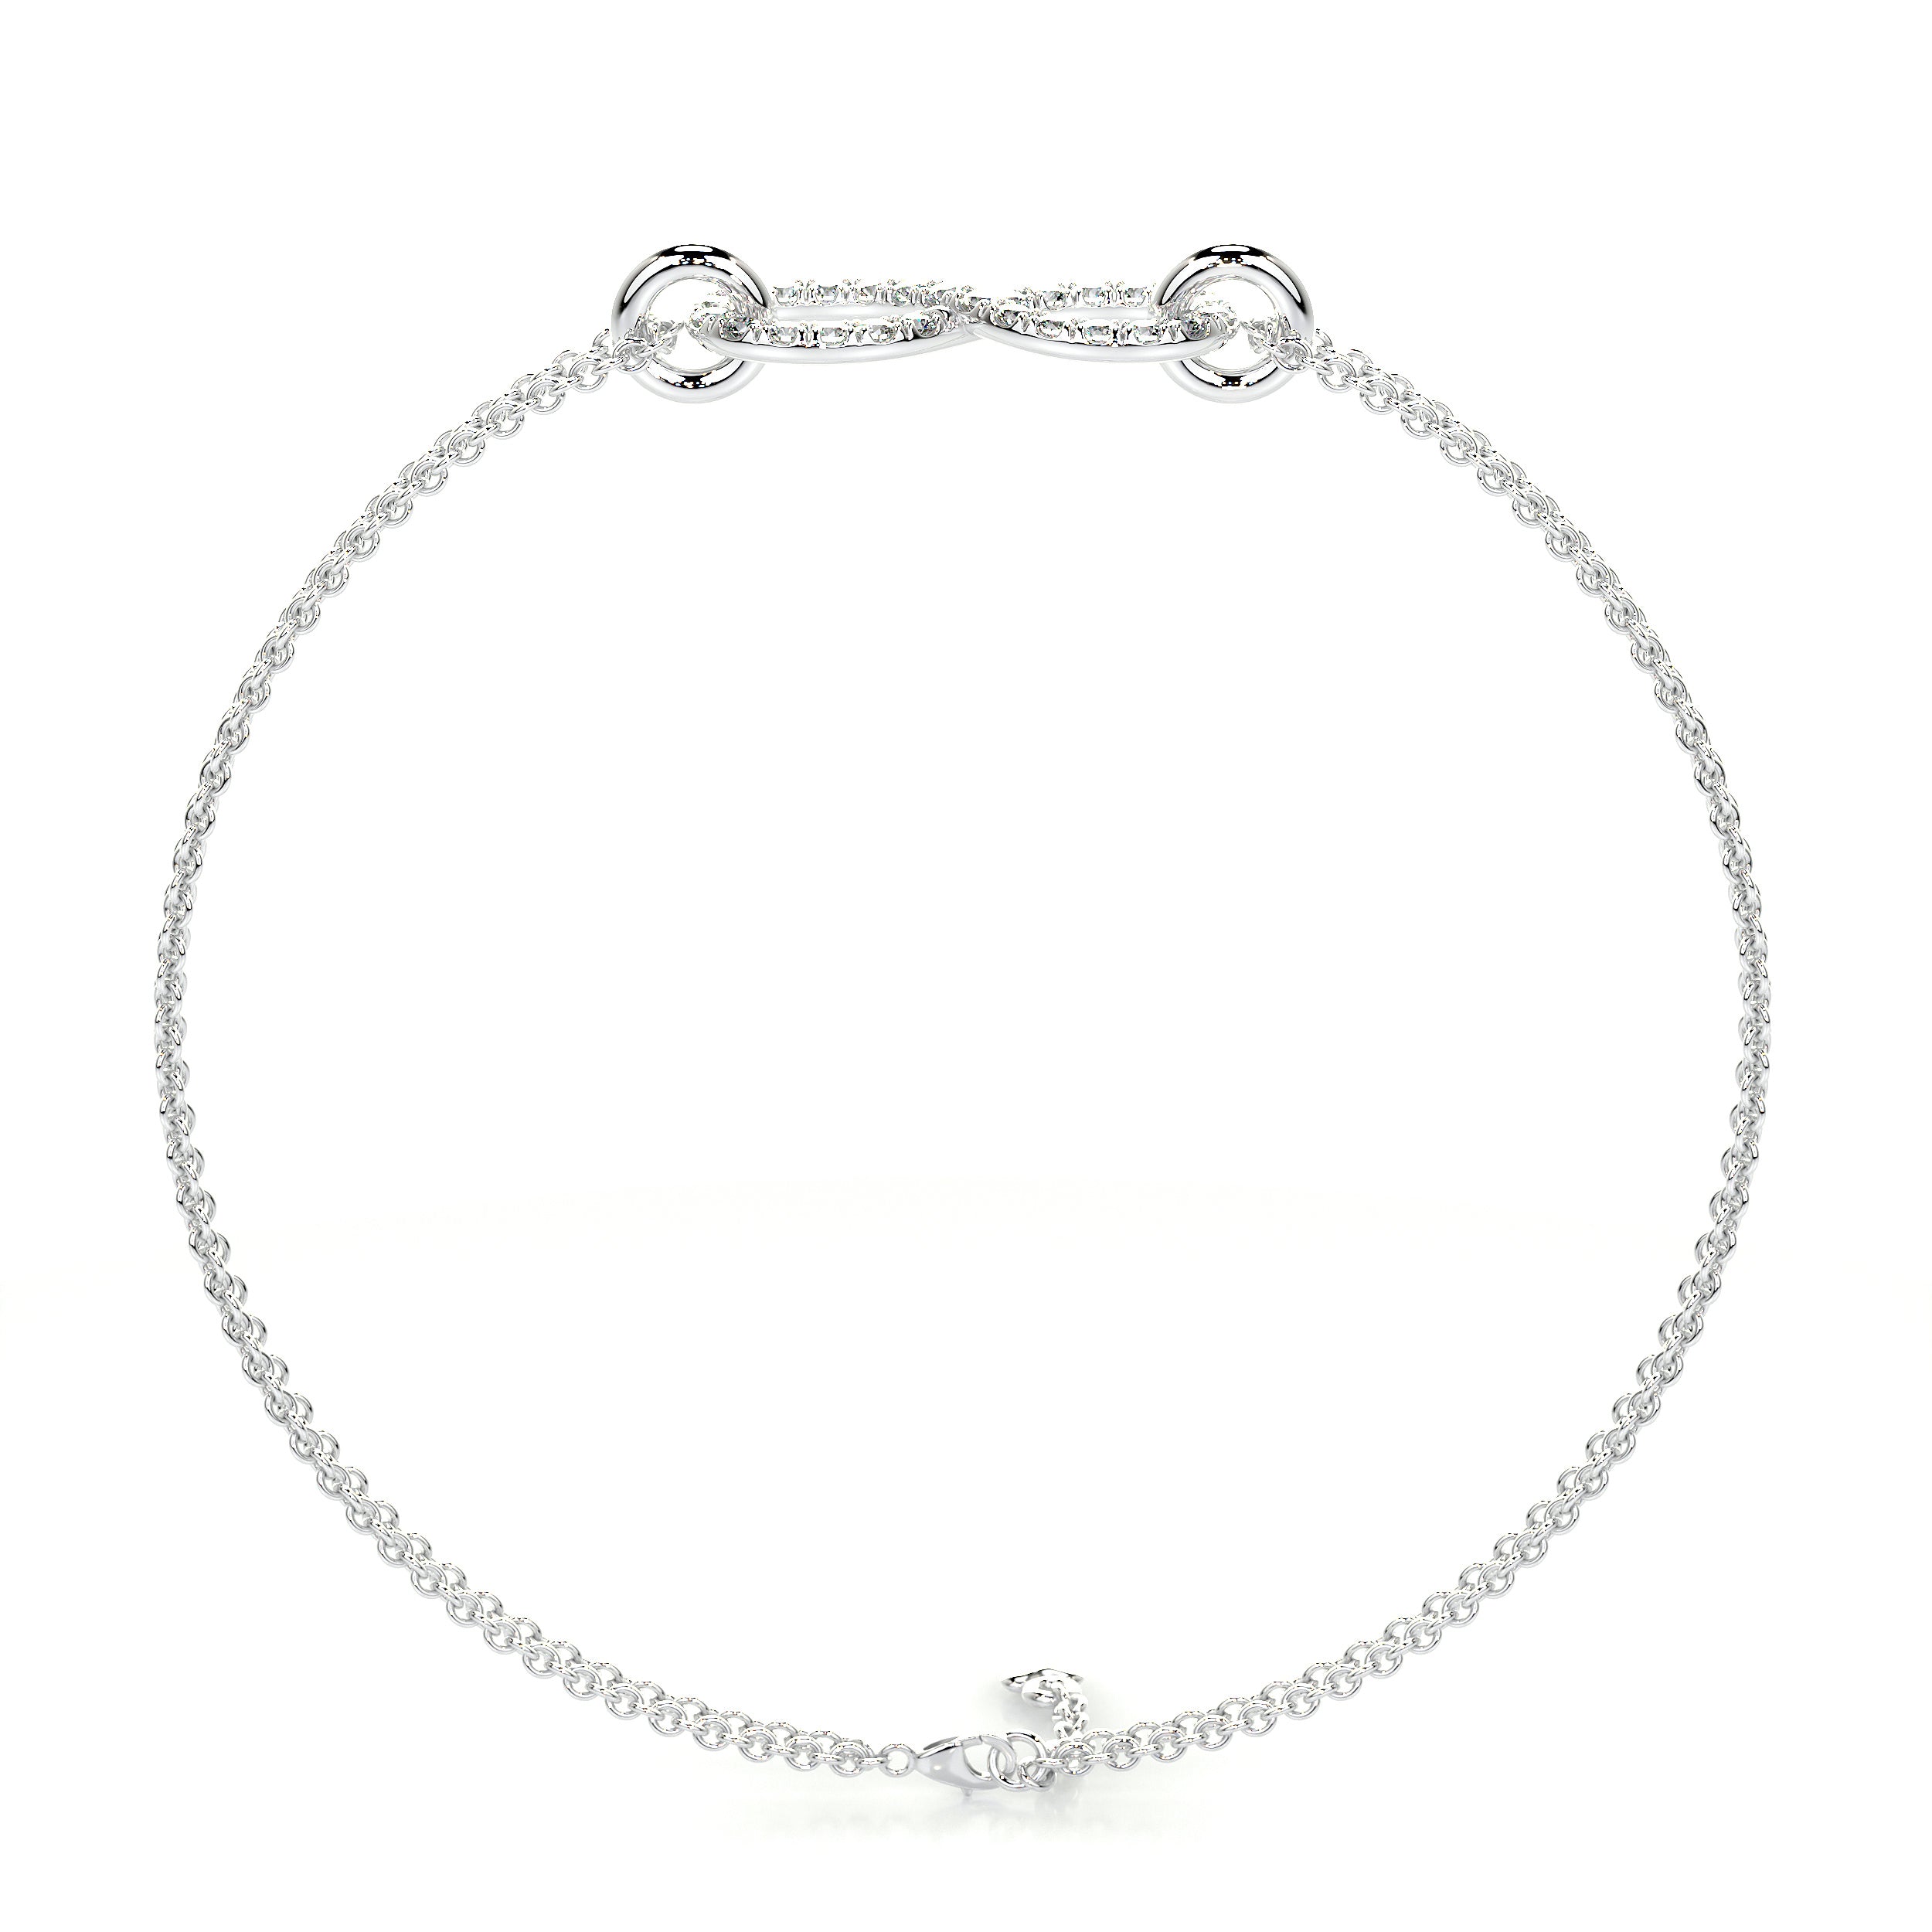 Debbie Diamonds Bracelet   (0.25 Carat) -14K White Gold